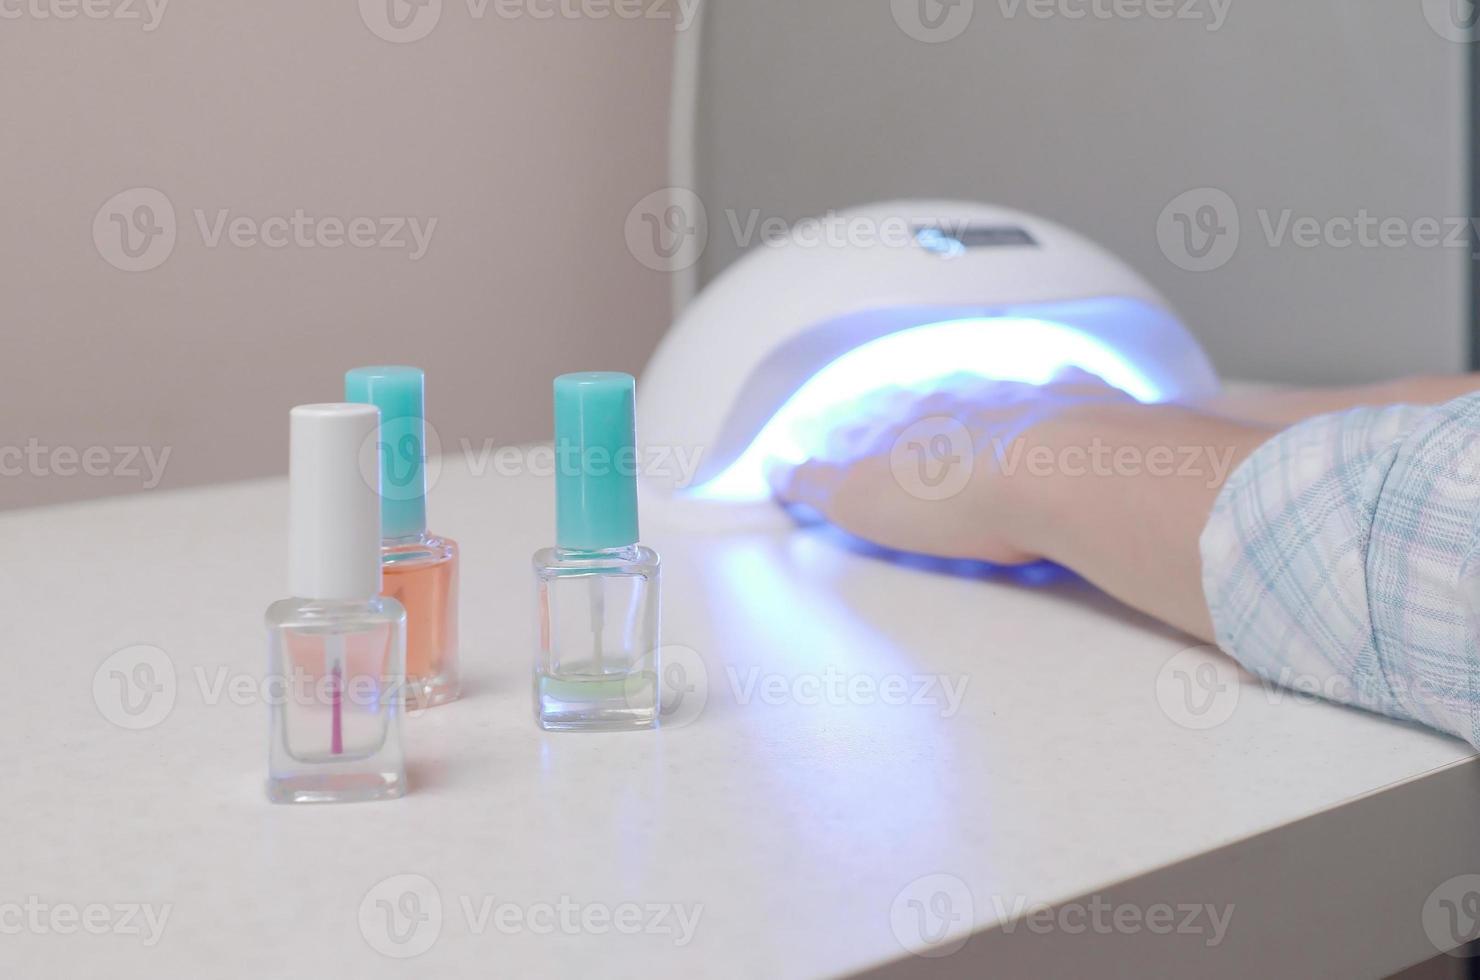 drei farblose transparente nagellackflaschen im hintergrund weiblicher hände in gel-uv-led-nagelweißlampe zum trocknen der maniküre foto